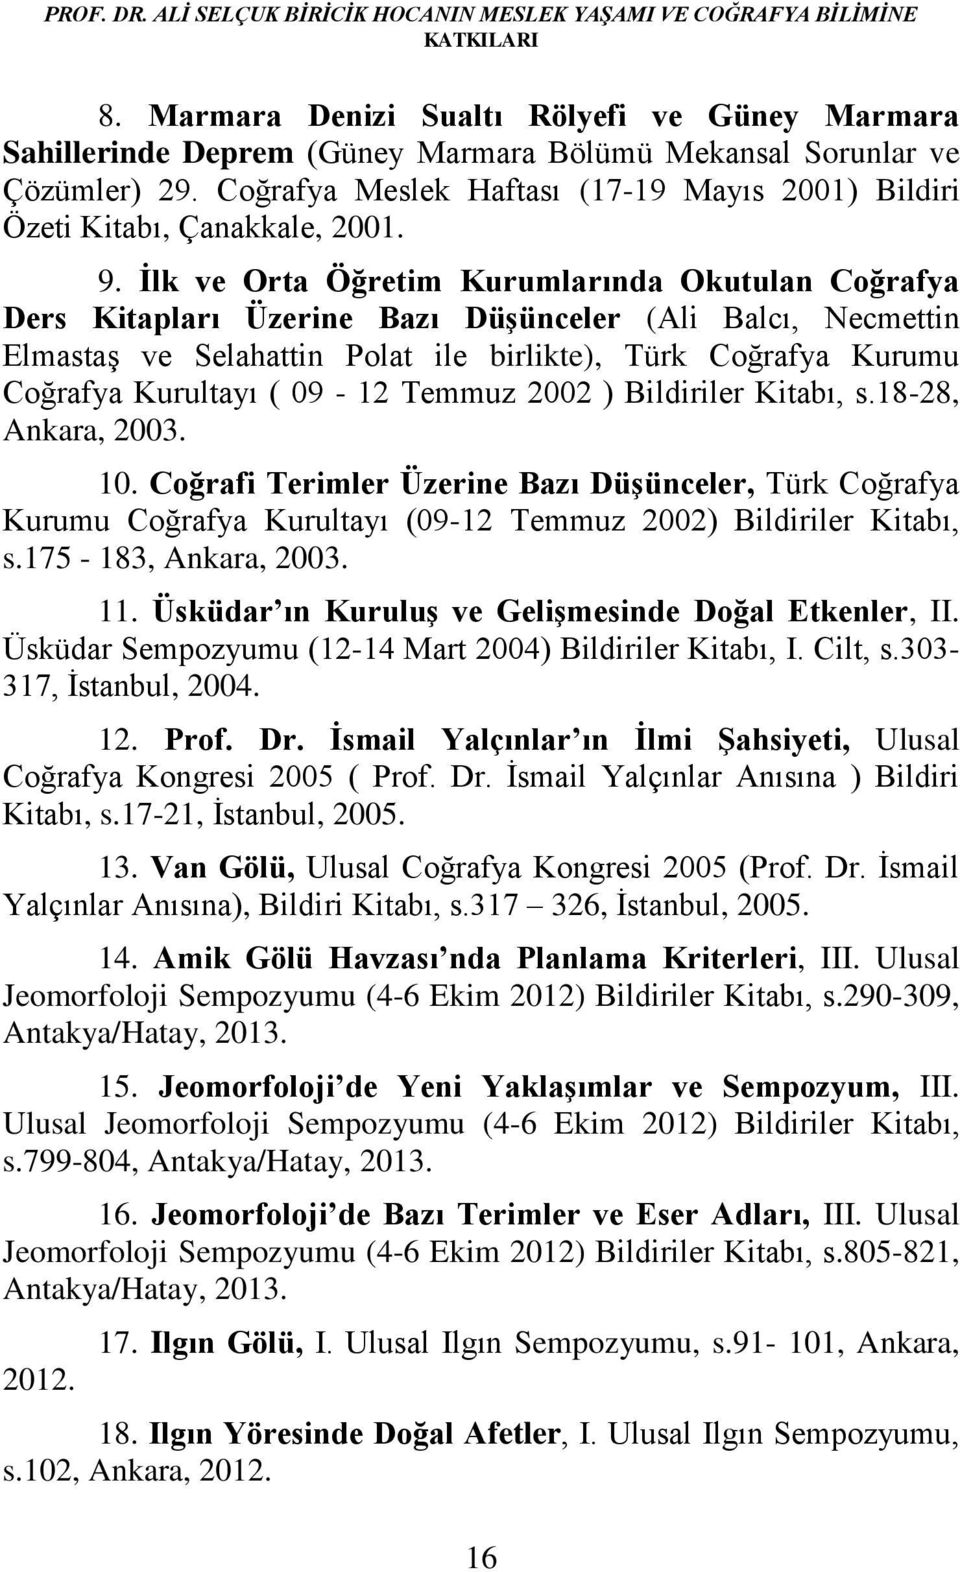 Coğrafya Meslek Haftası (17-19 Mayıs 2001) Bildiri Özeti Kitabı, Çanakkale, 2001. 9.